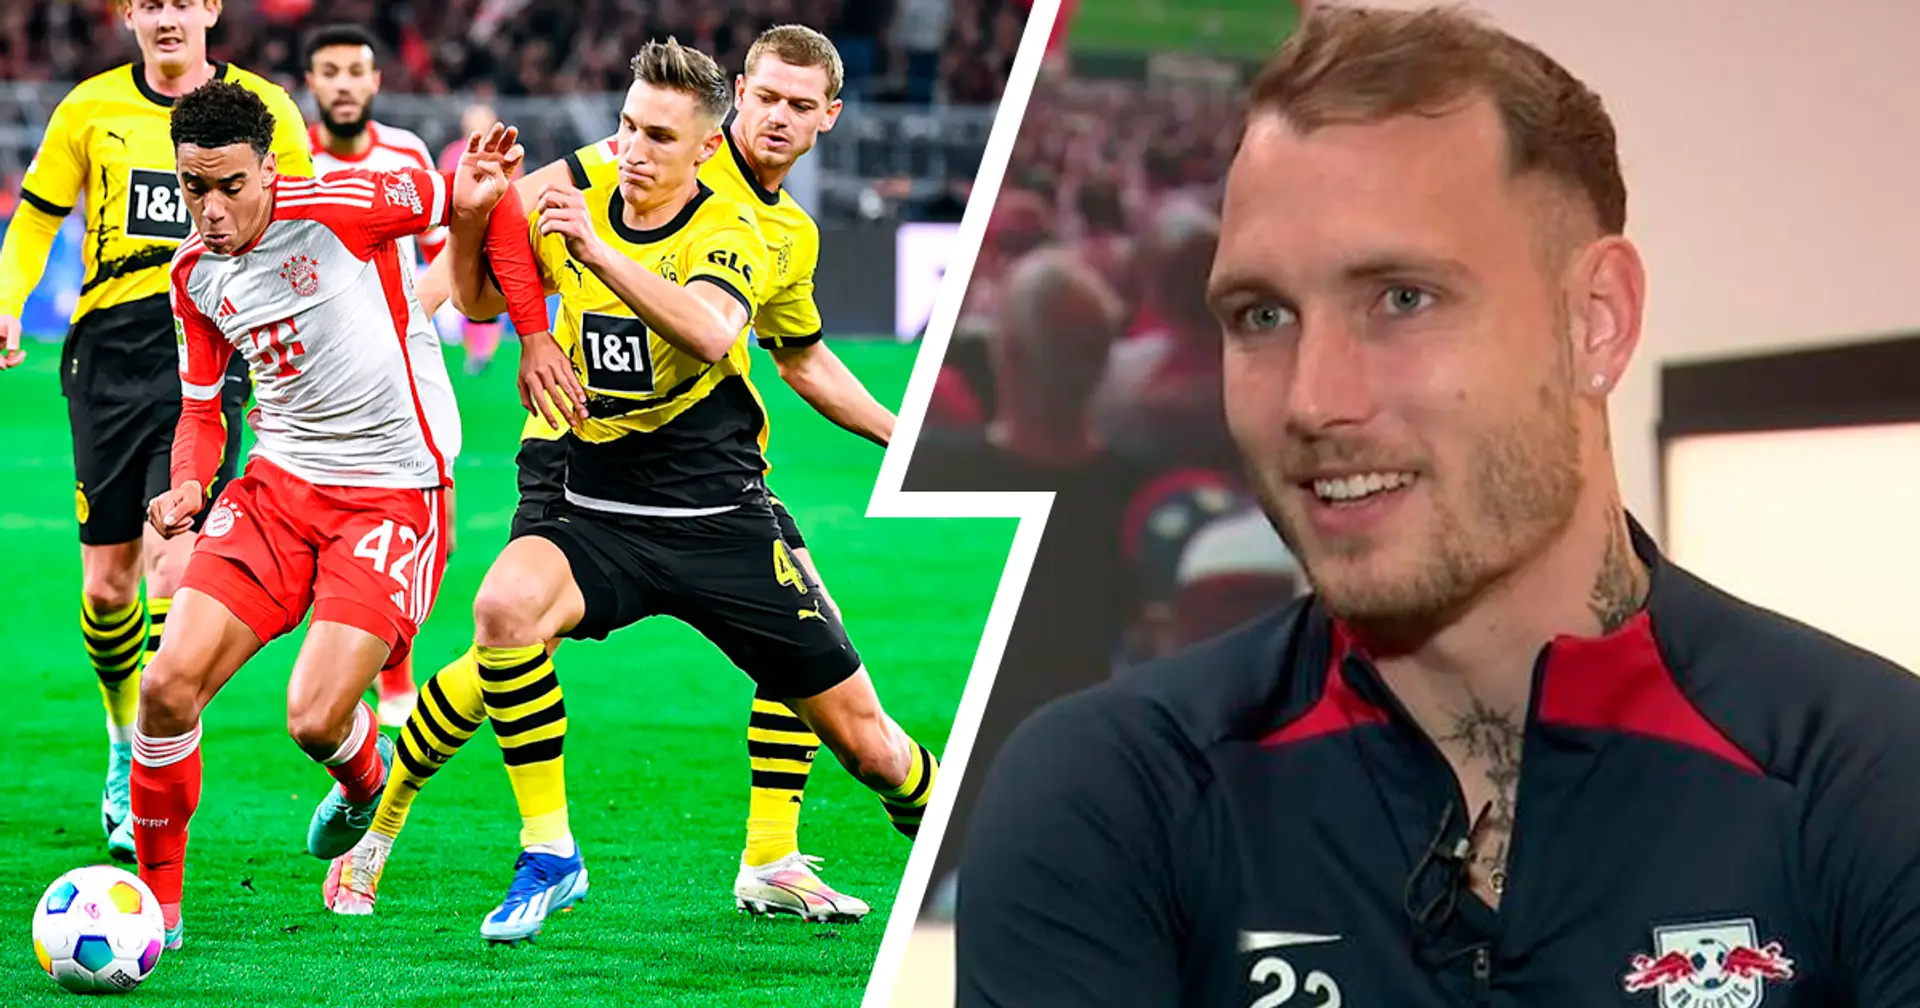 Leipzig-Star Raum drückt Bayern die Daumen gegen Dortmund: "Habe Thomas und Jo mitgegeben, dass sie gerne gewinnen dürfen"